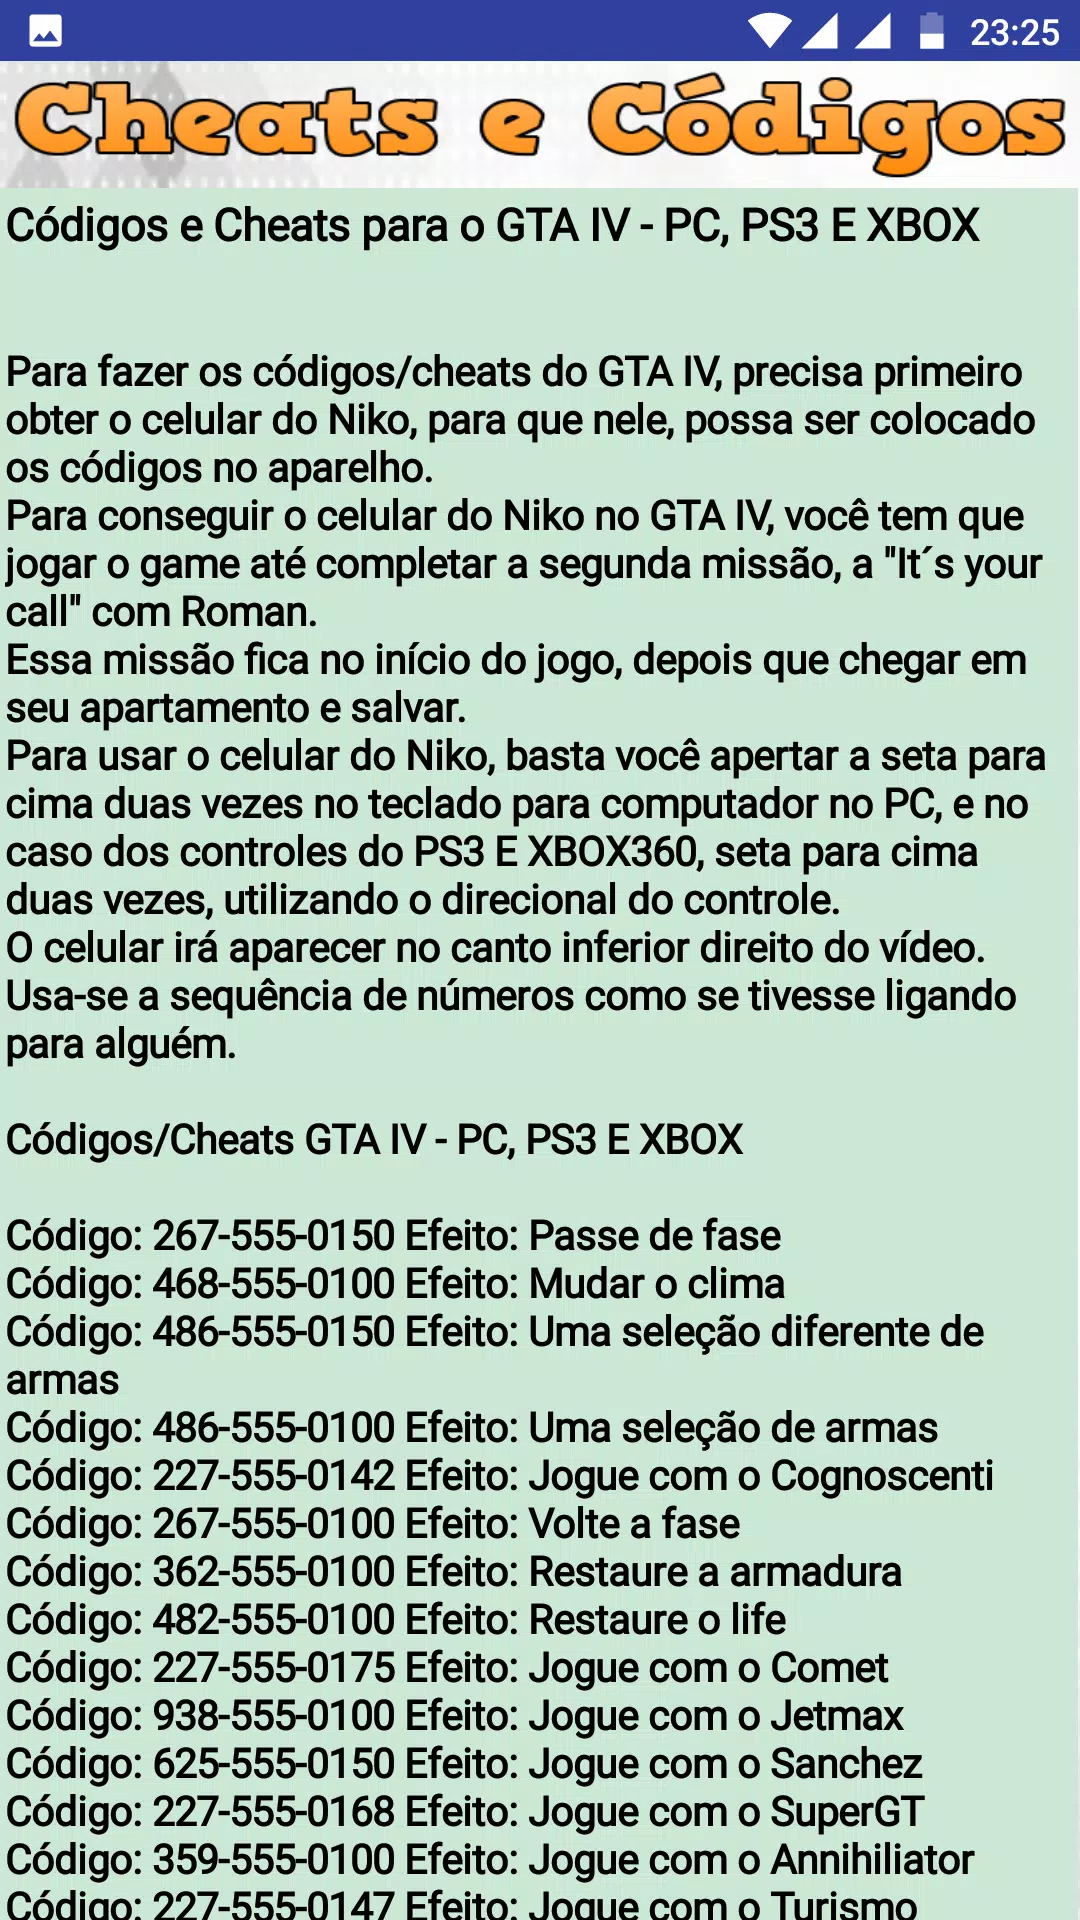 Todos os códigos do GTA IV atualizados 2020 